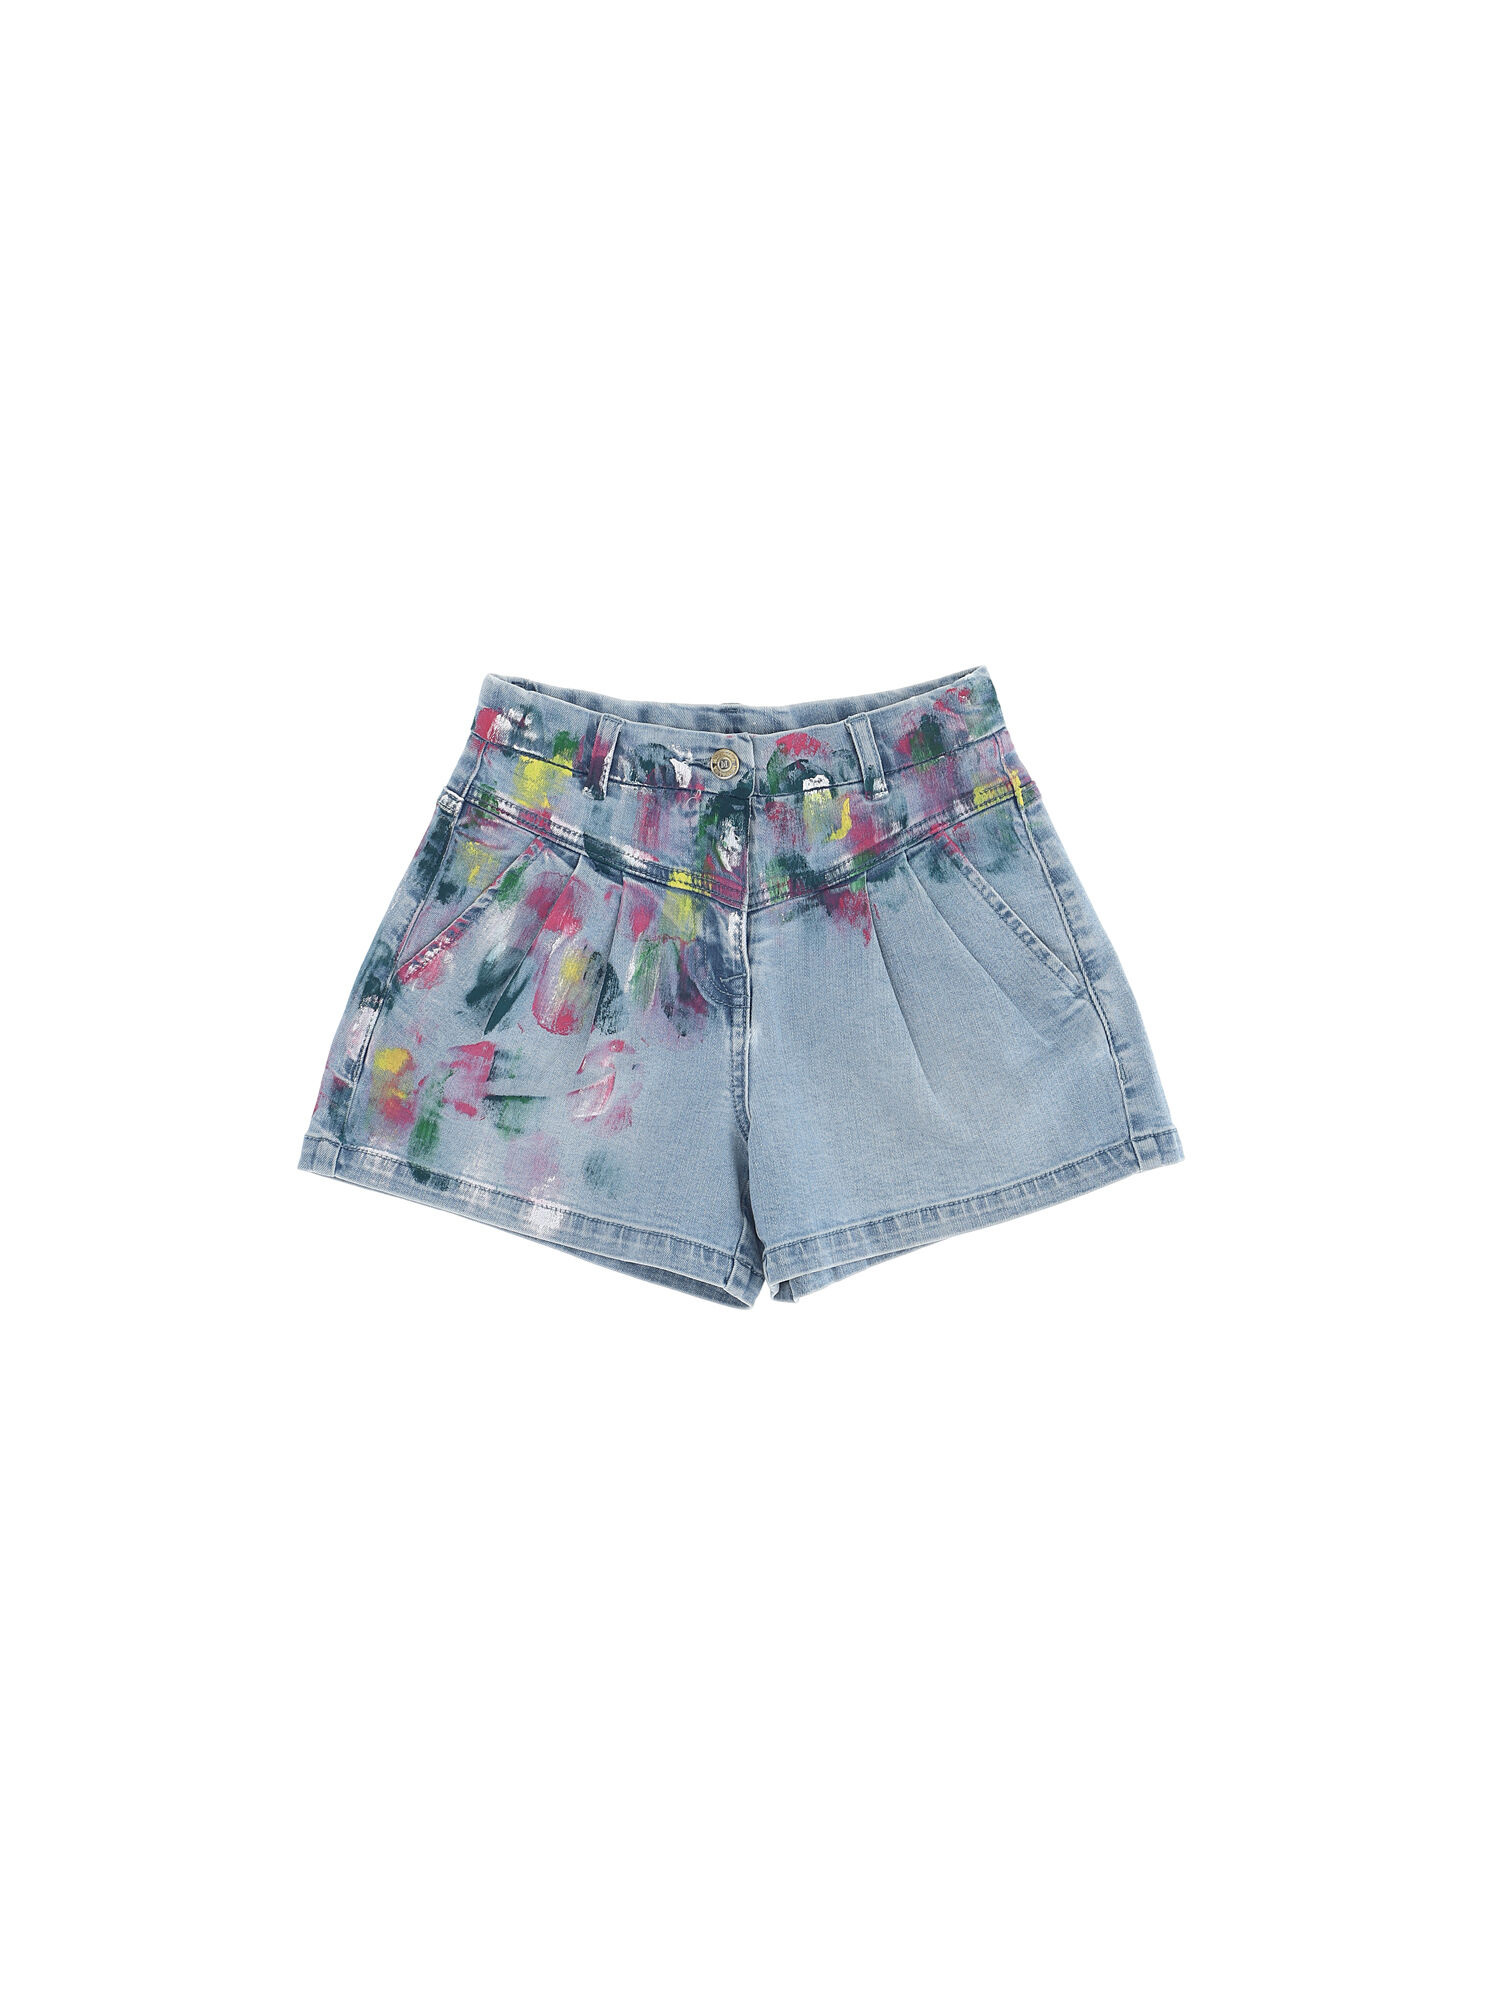 CFMascotte Bermuda shorts Monnalisa Girls Clothing Shorts Bermudas 